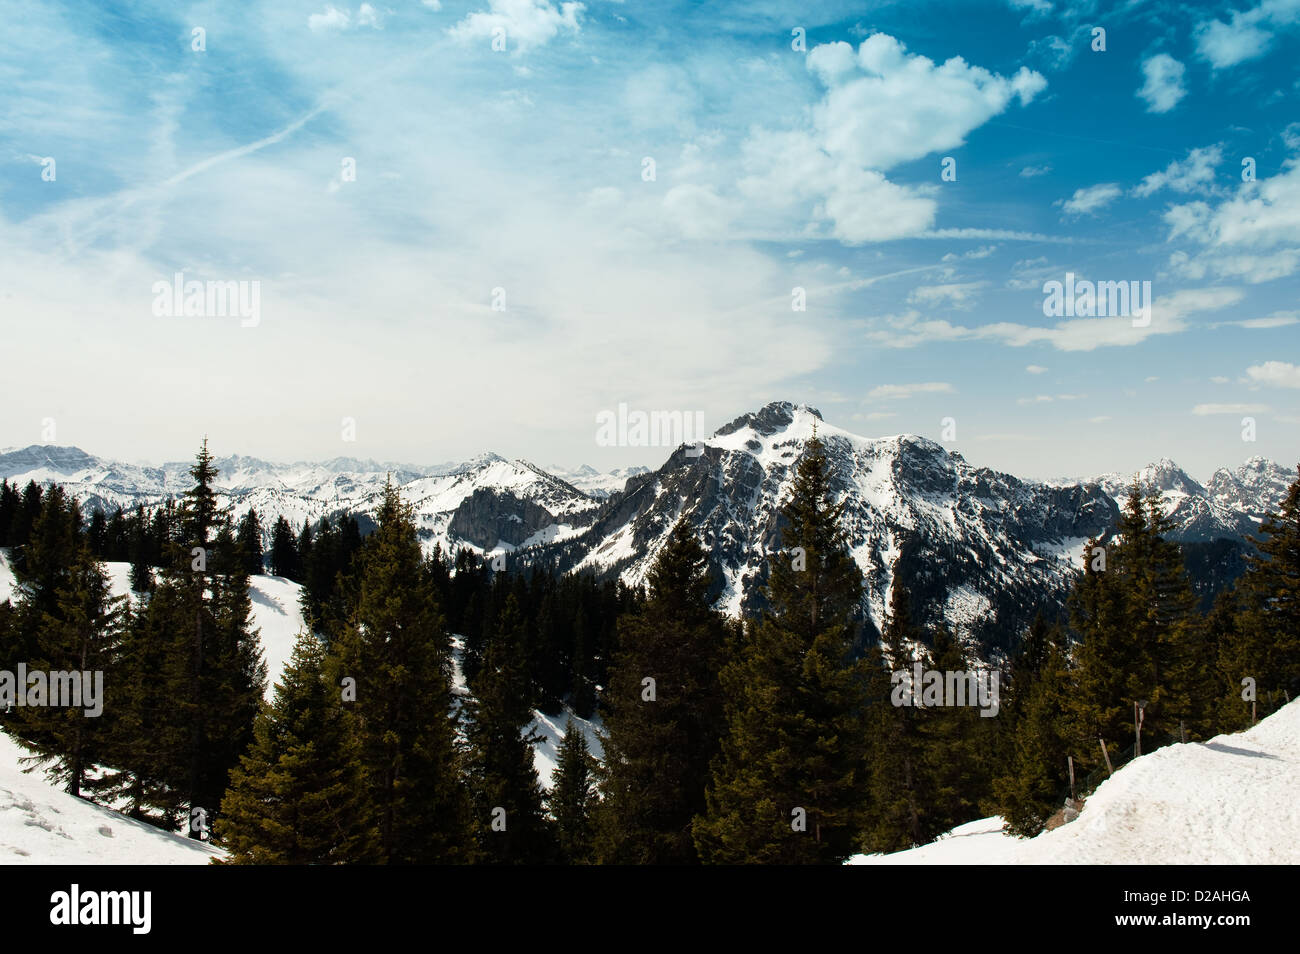 German Alps overlooking rural landscape Stock Photo